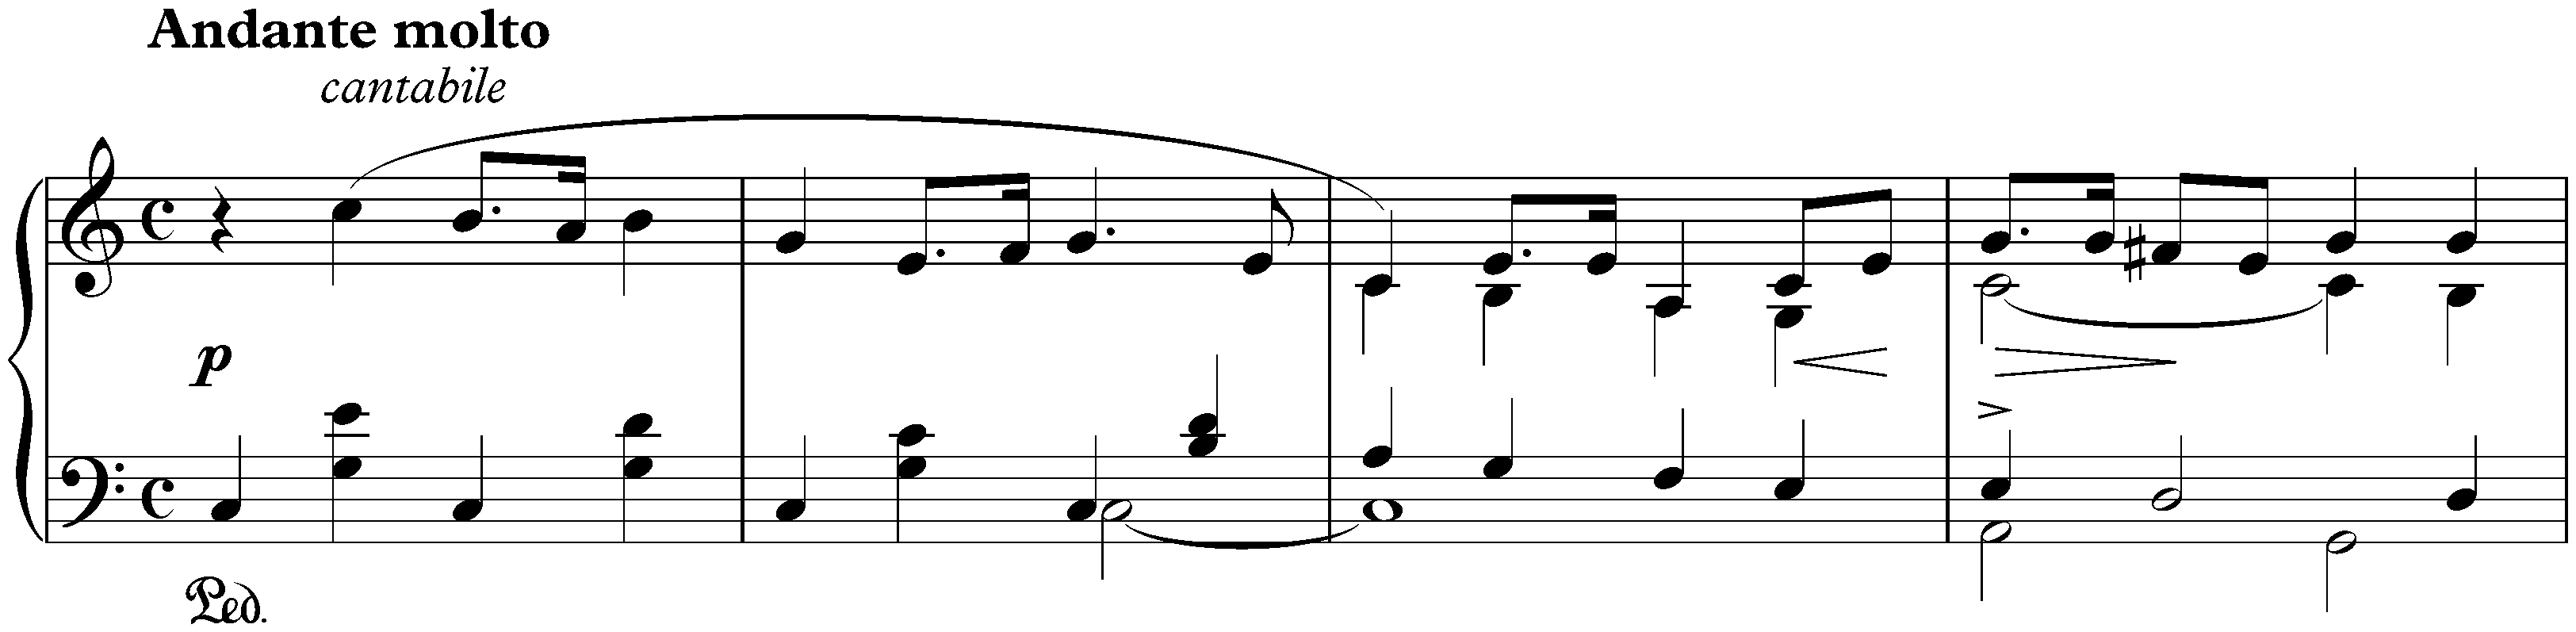 Sonata in E minor, op. 7; 2. Andante molto